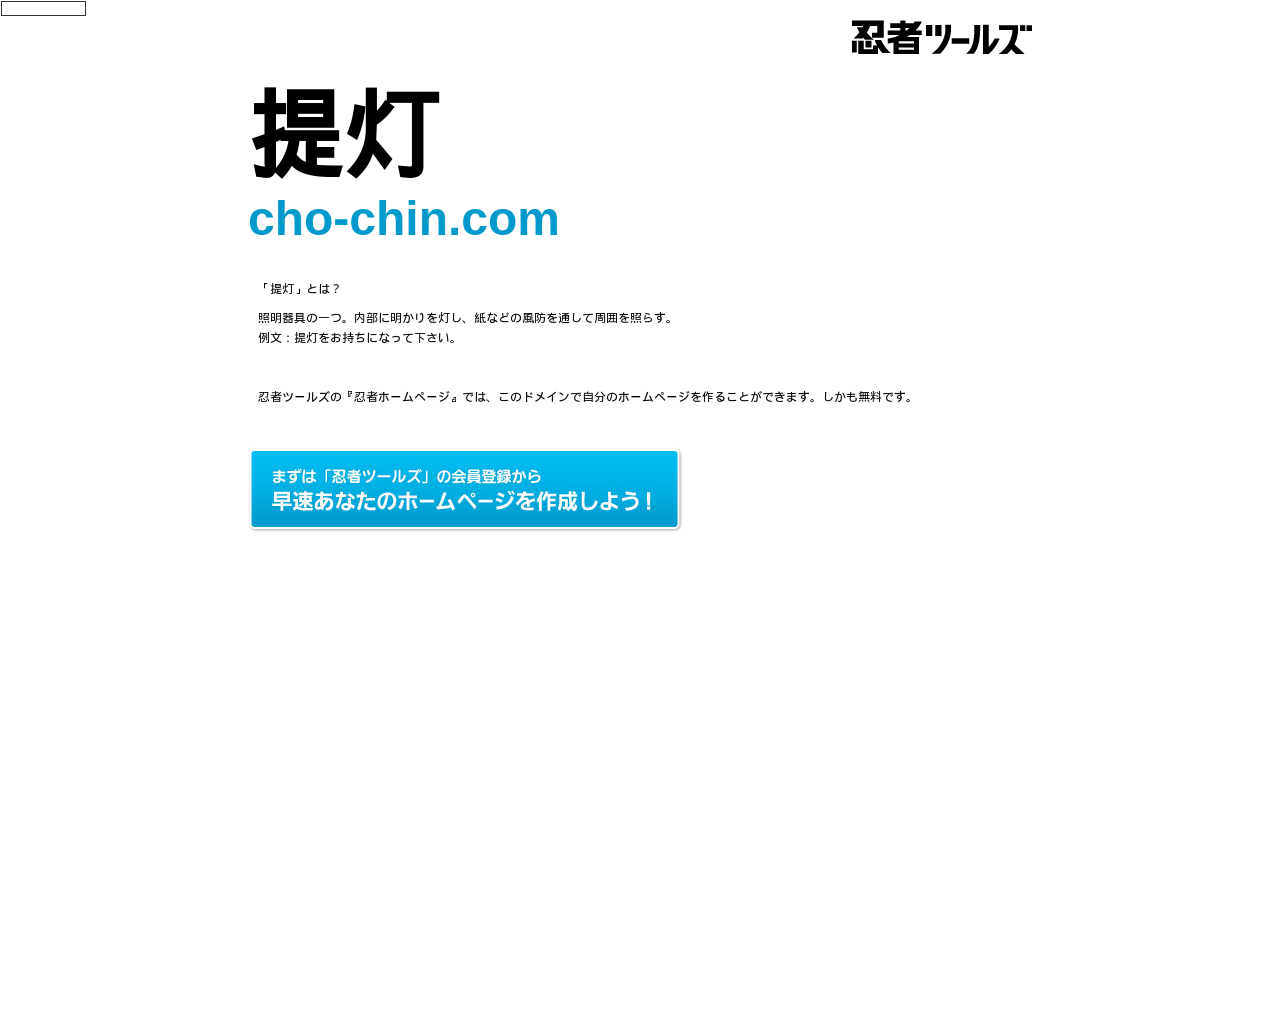 cho-chin.com